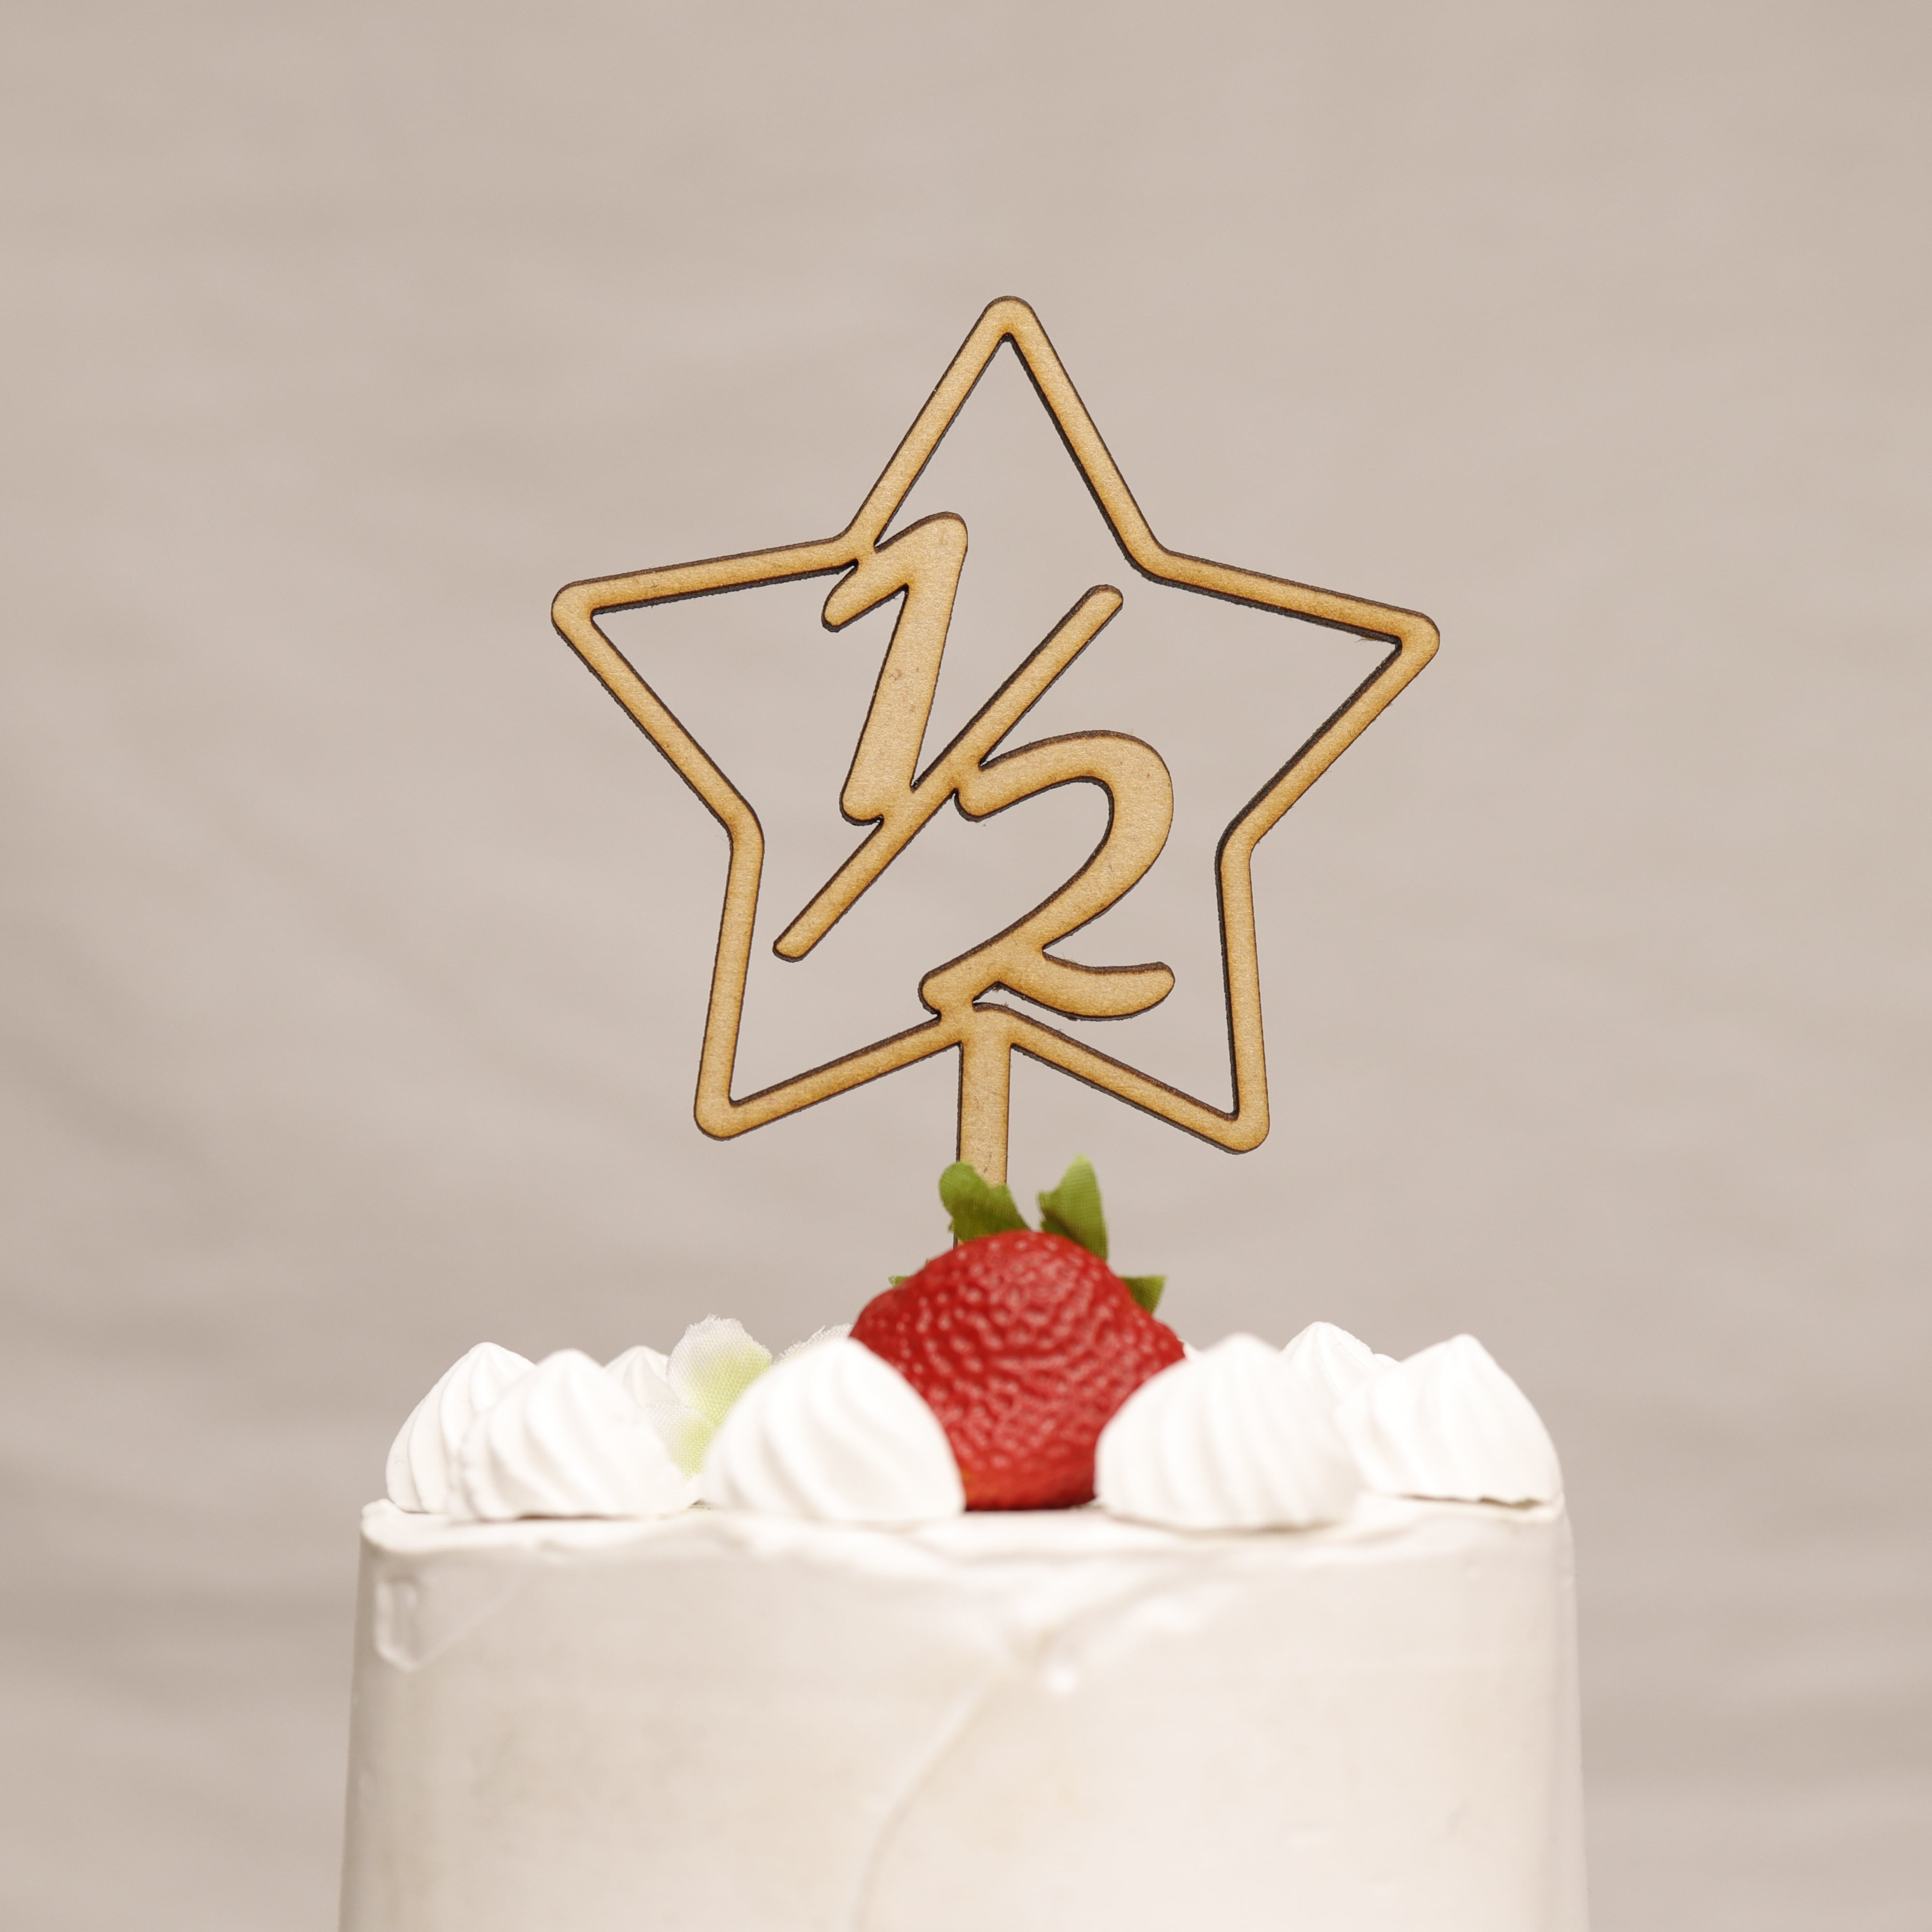 ケーキトッパー【7cm】星 1/2 誕生日 飾り 木製 ケーキピック